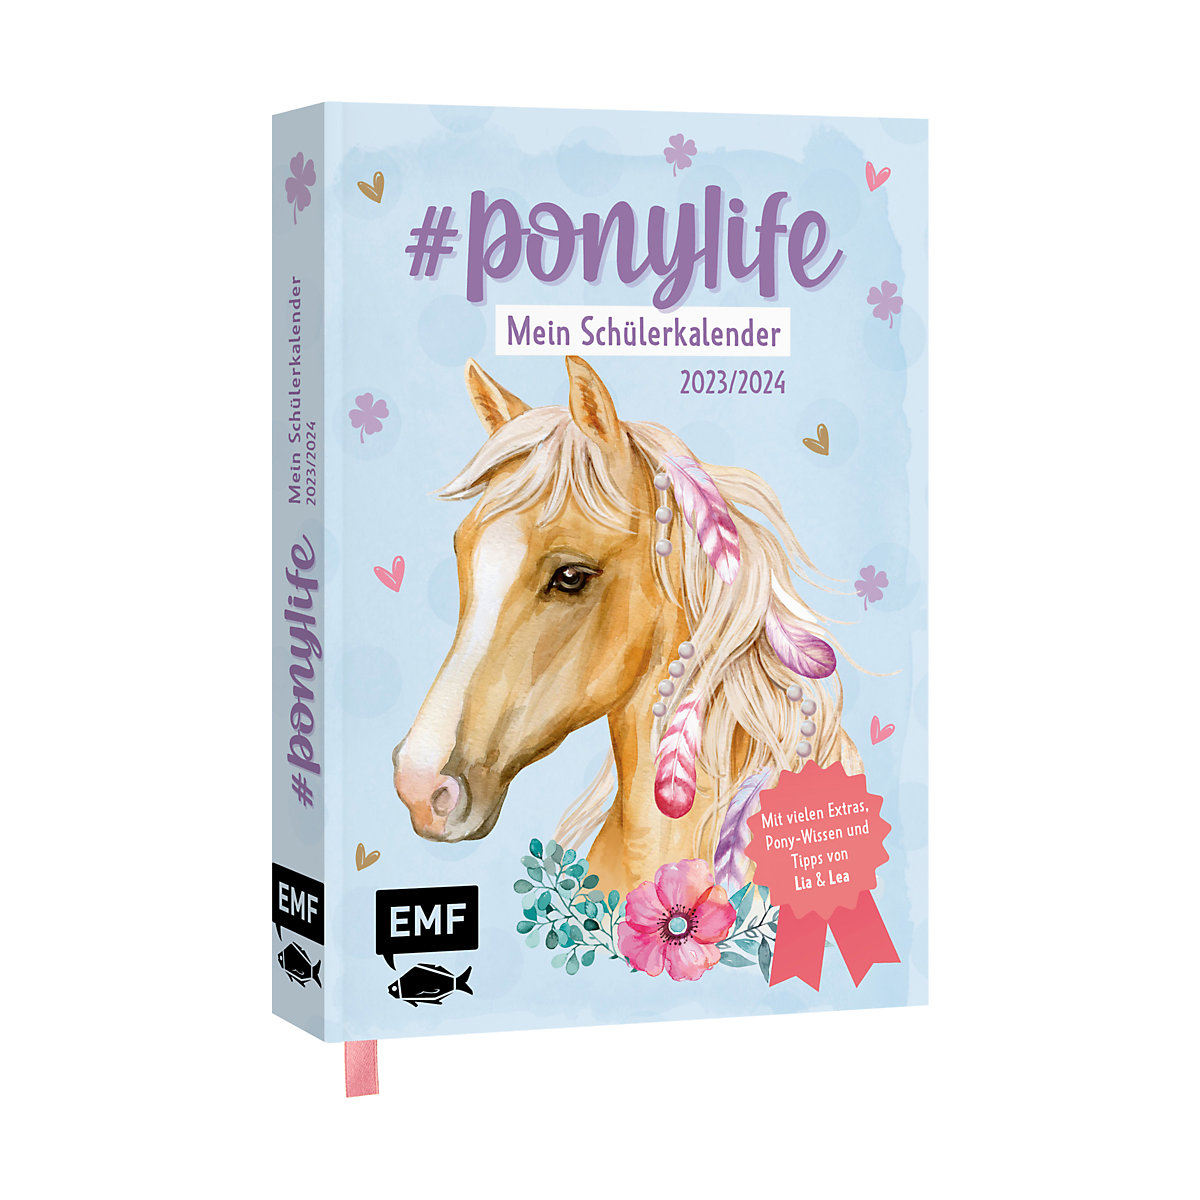 #ponylife Mein Schülerkalender 2023/2024